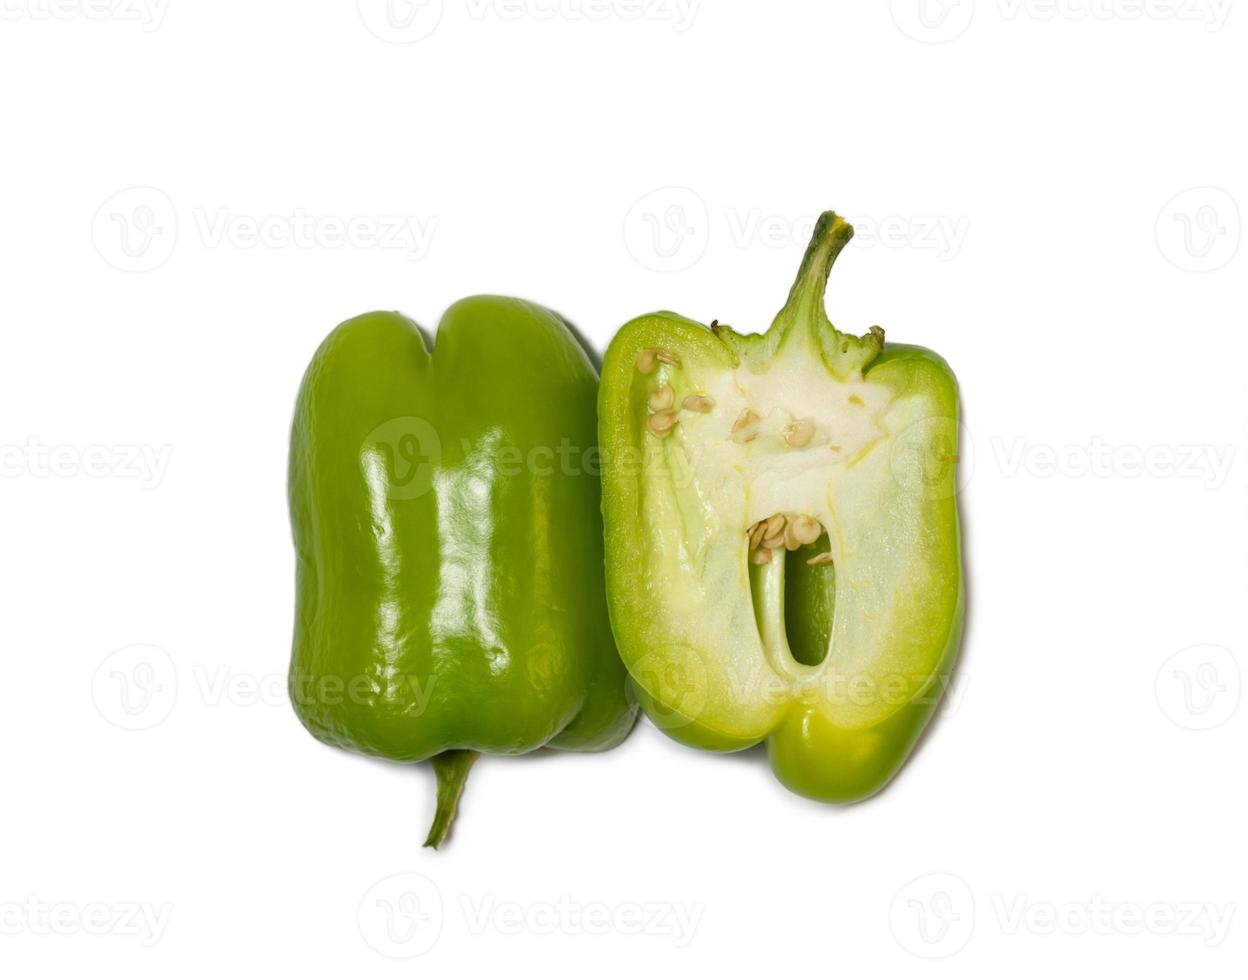 in Scheiben geschnittene Dolma-Pfeffer auf weißem Hintergrund. ein saftig schönes gemüse. grüne Paprika. foto